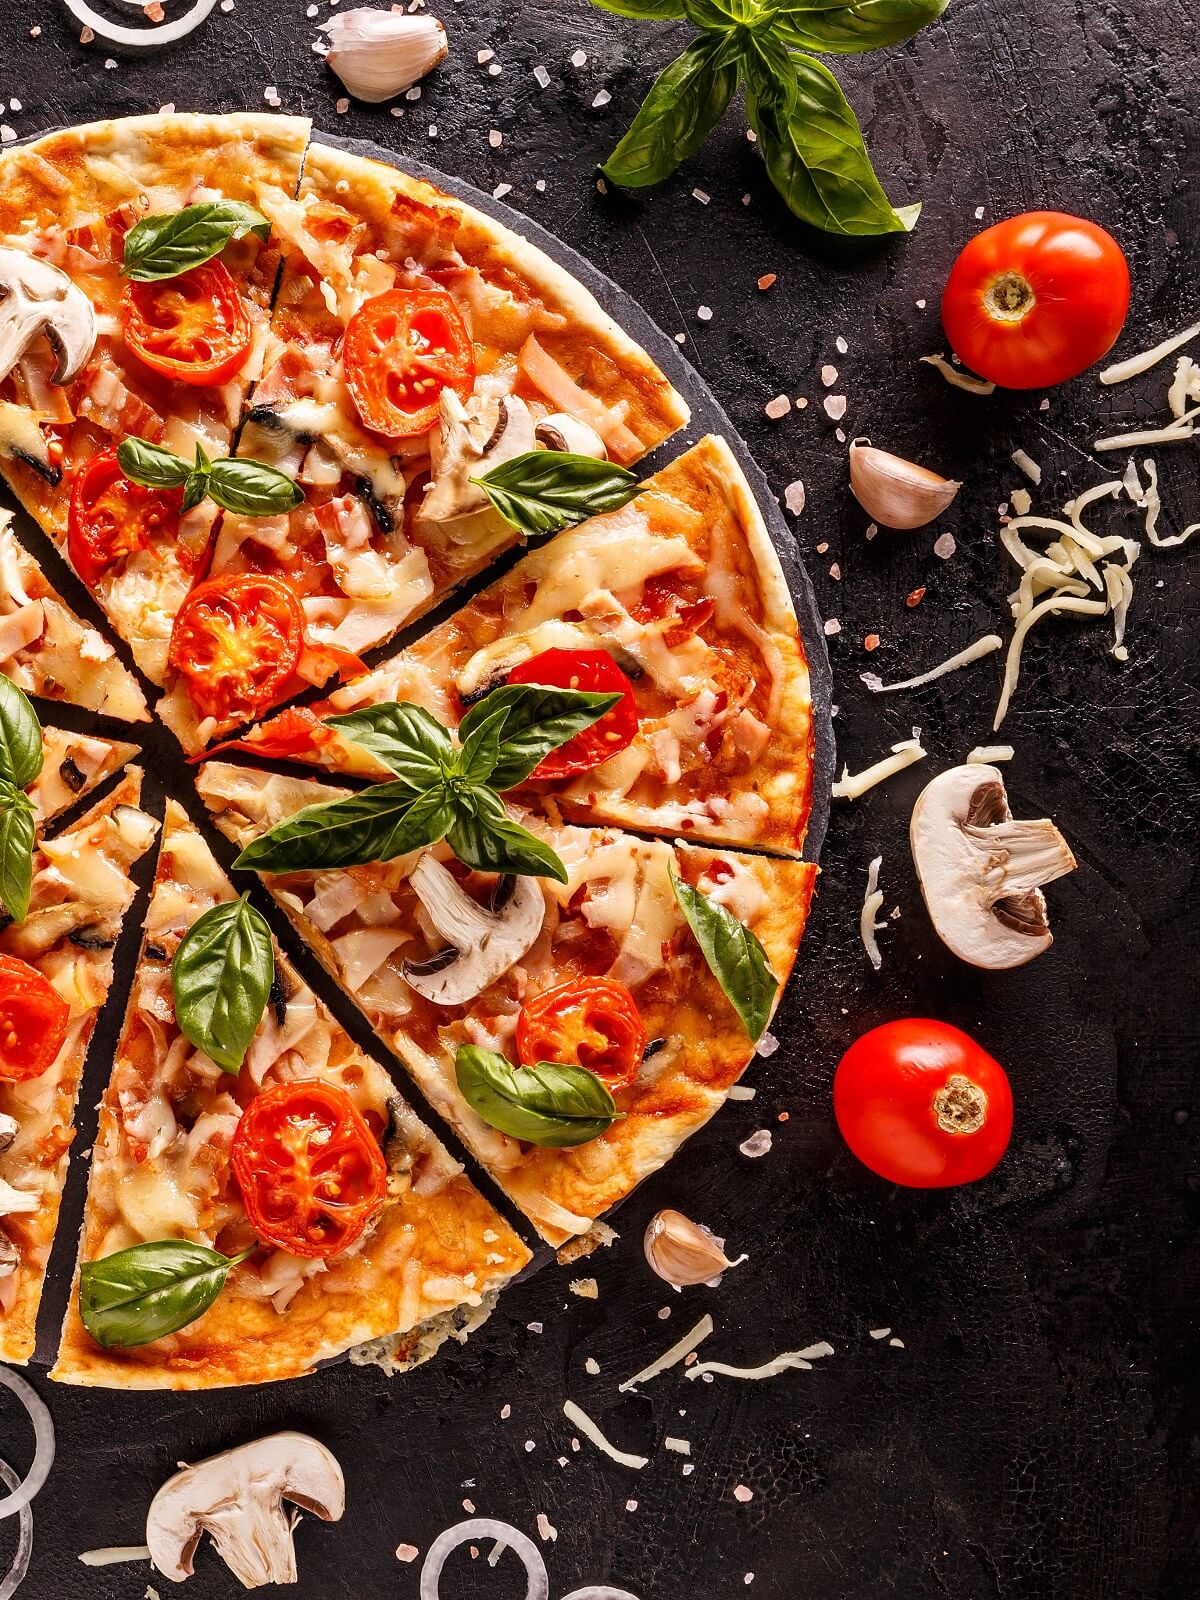 fertige pizza in achtel aufgeschnitten - smarterpix